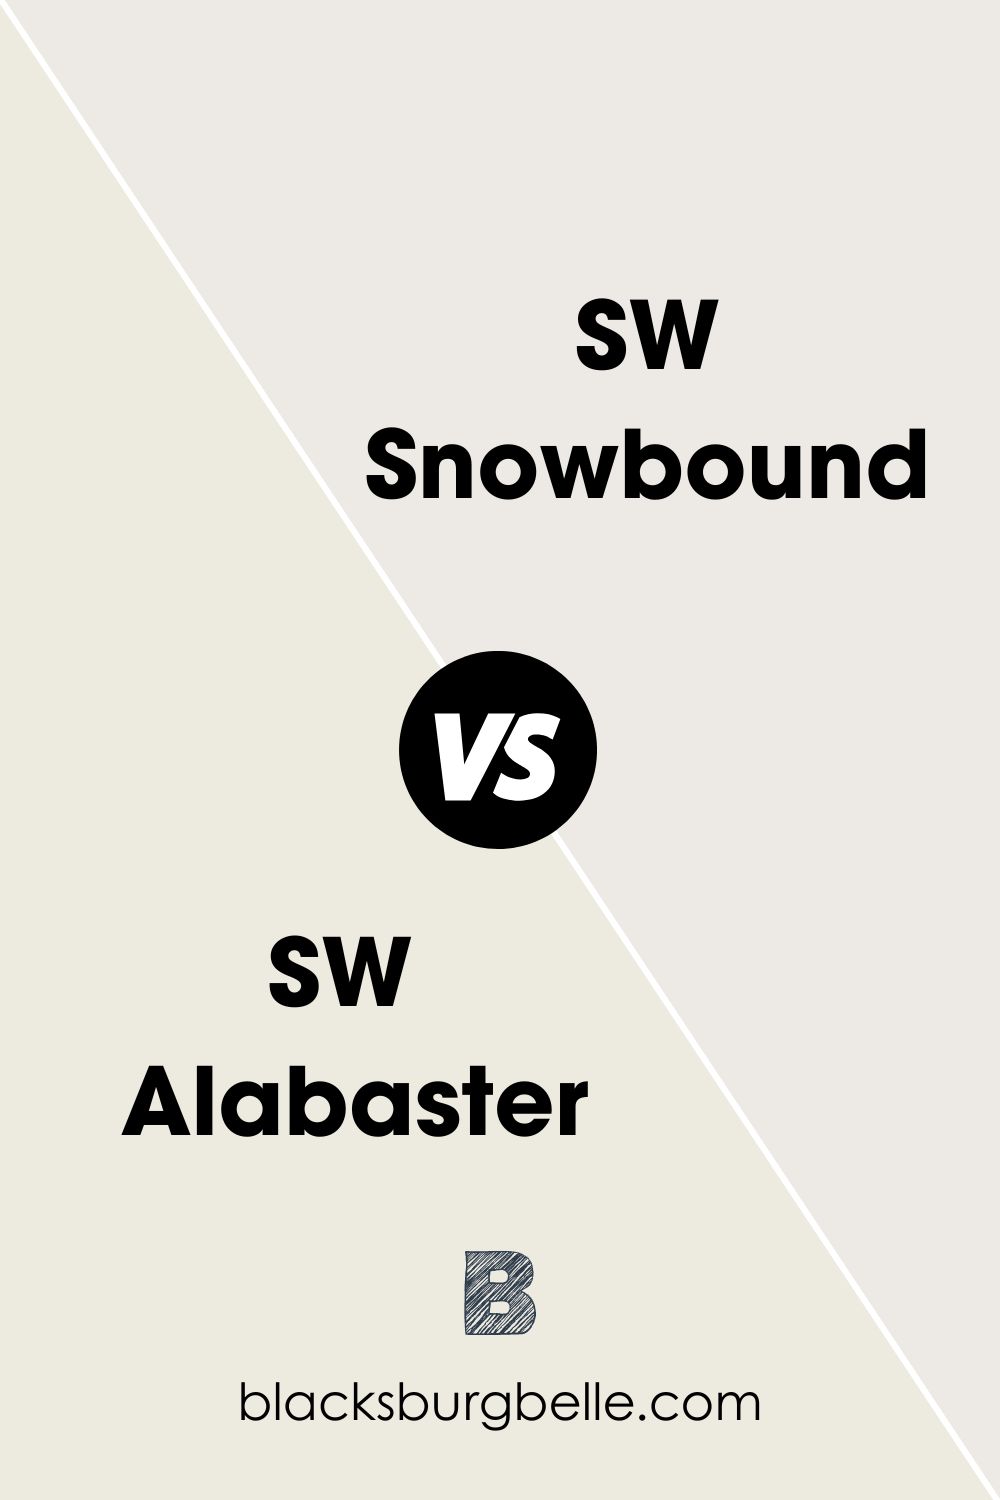 SW Snowbound vs Sw Alabaster